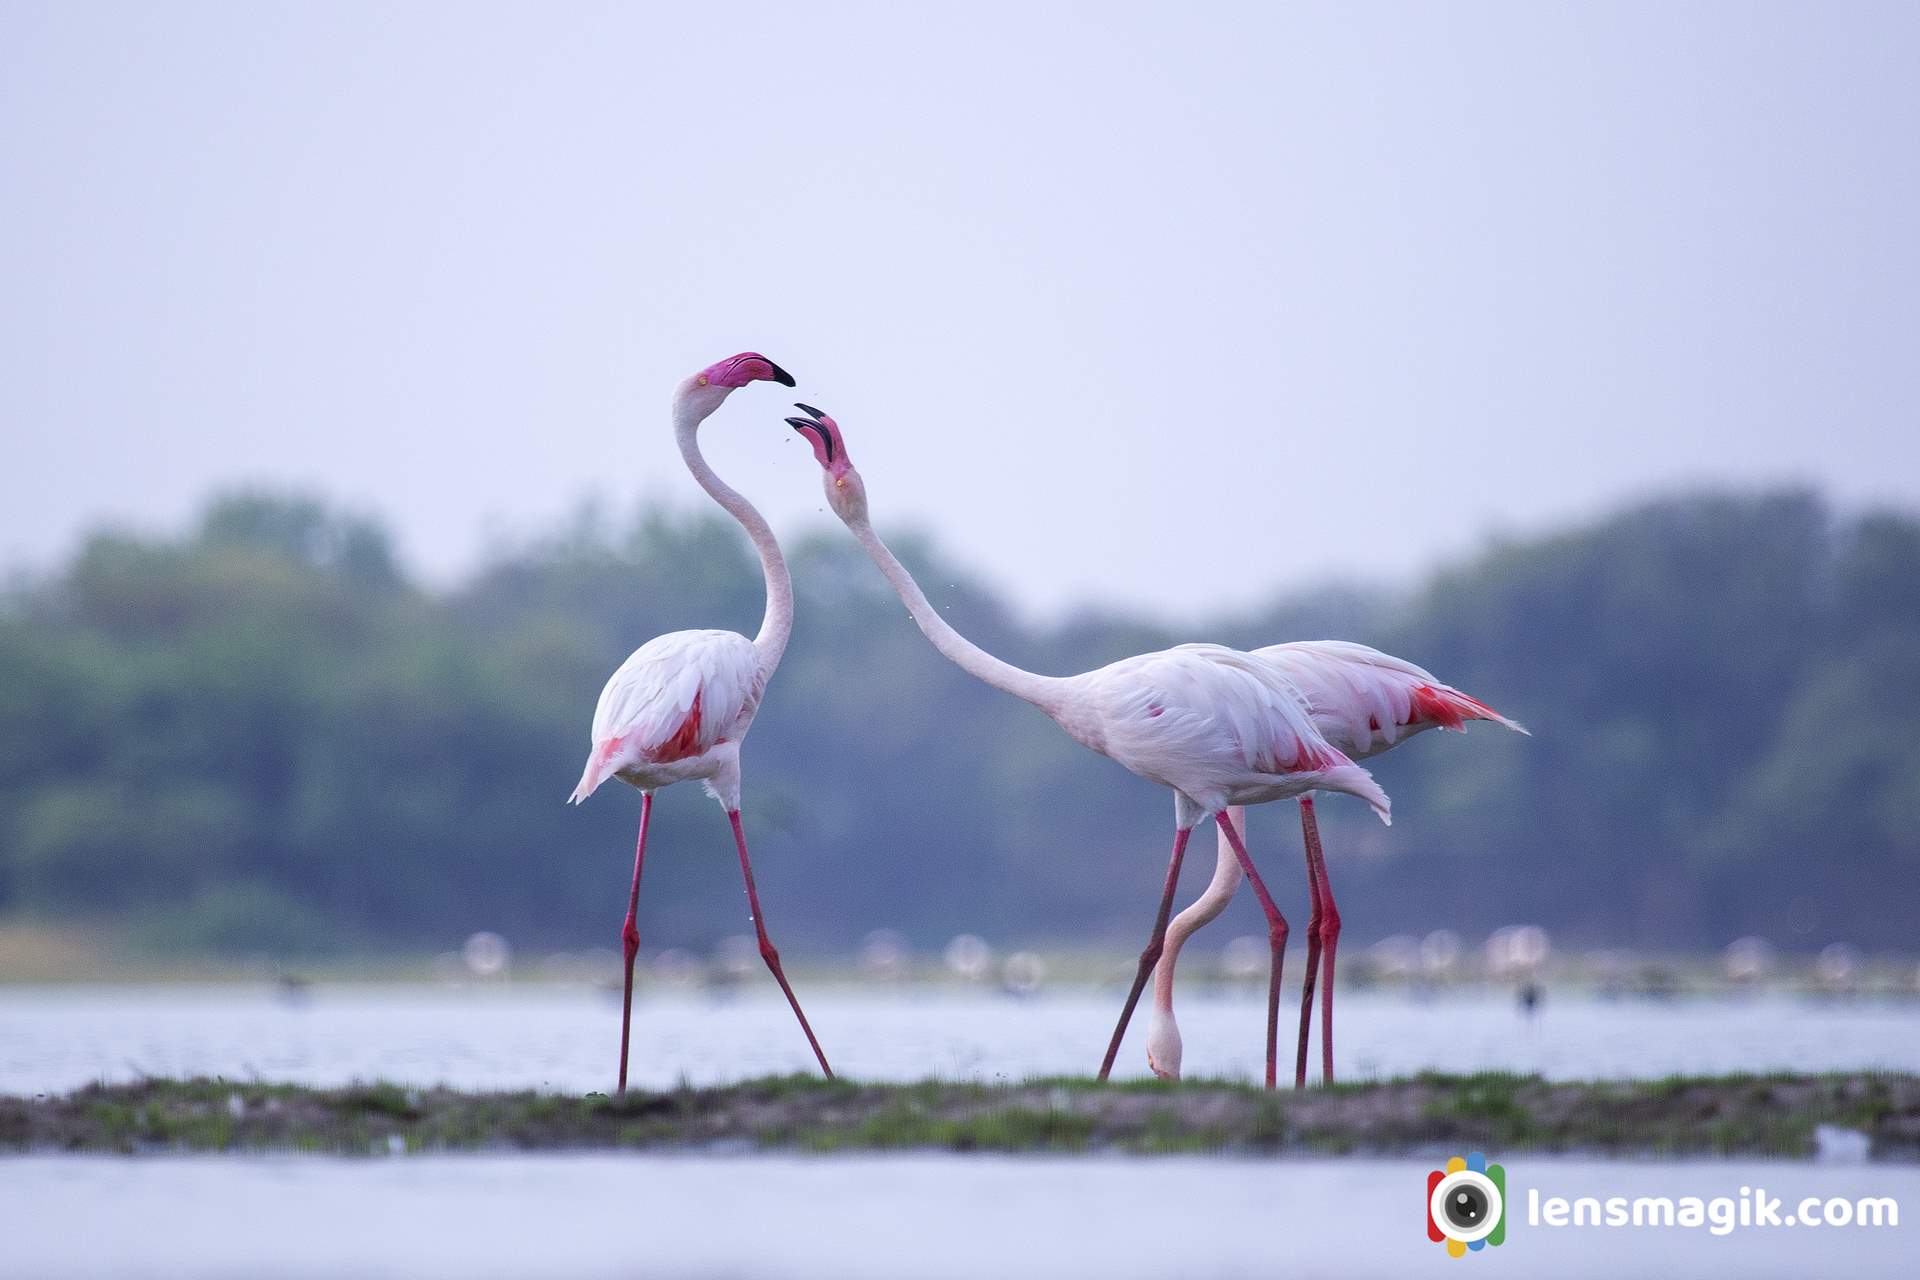 Flamingo Bird Photos